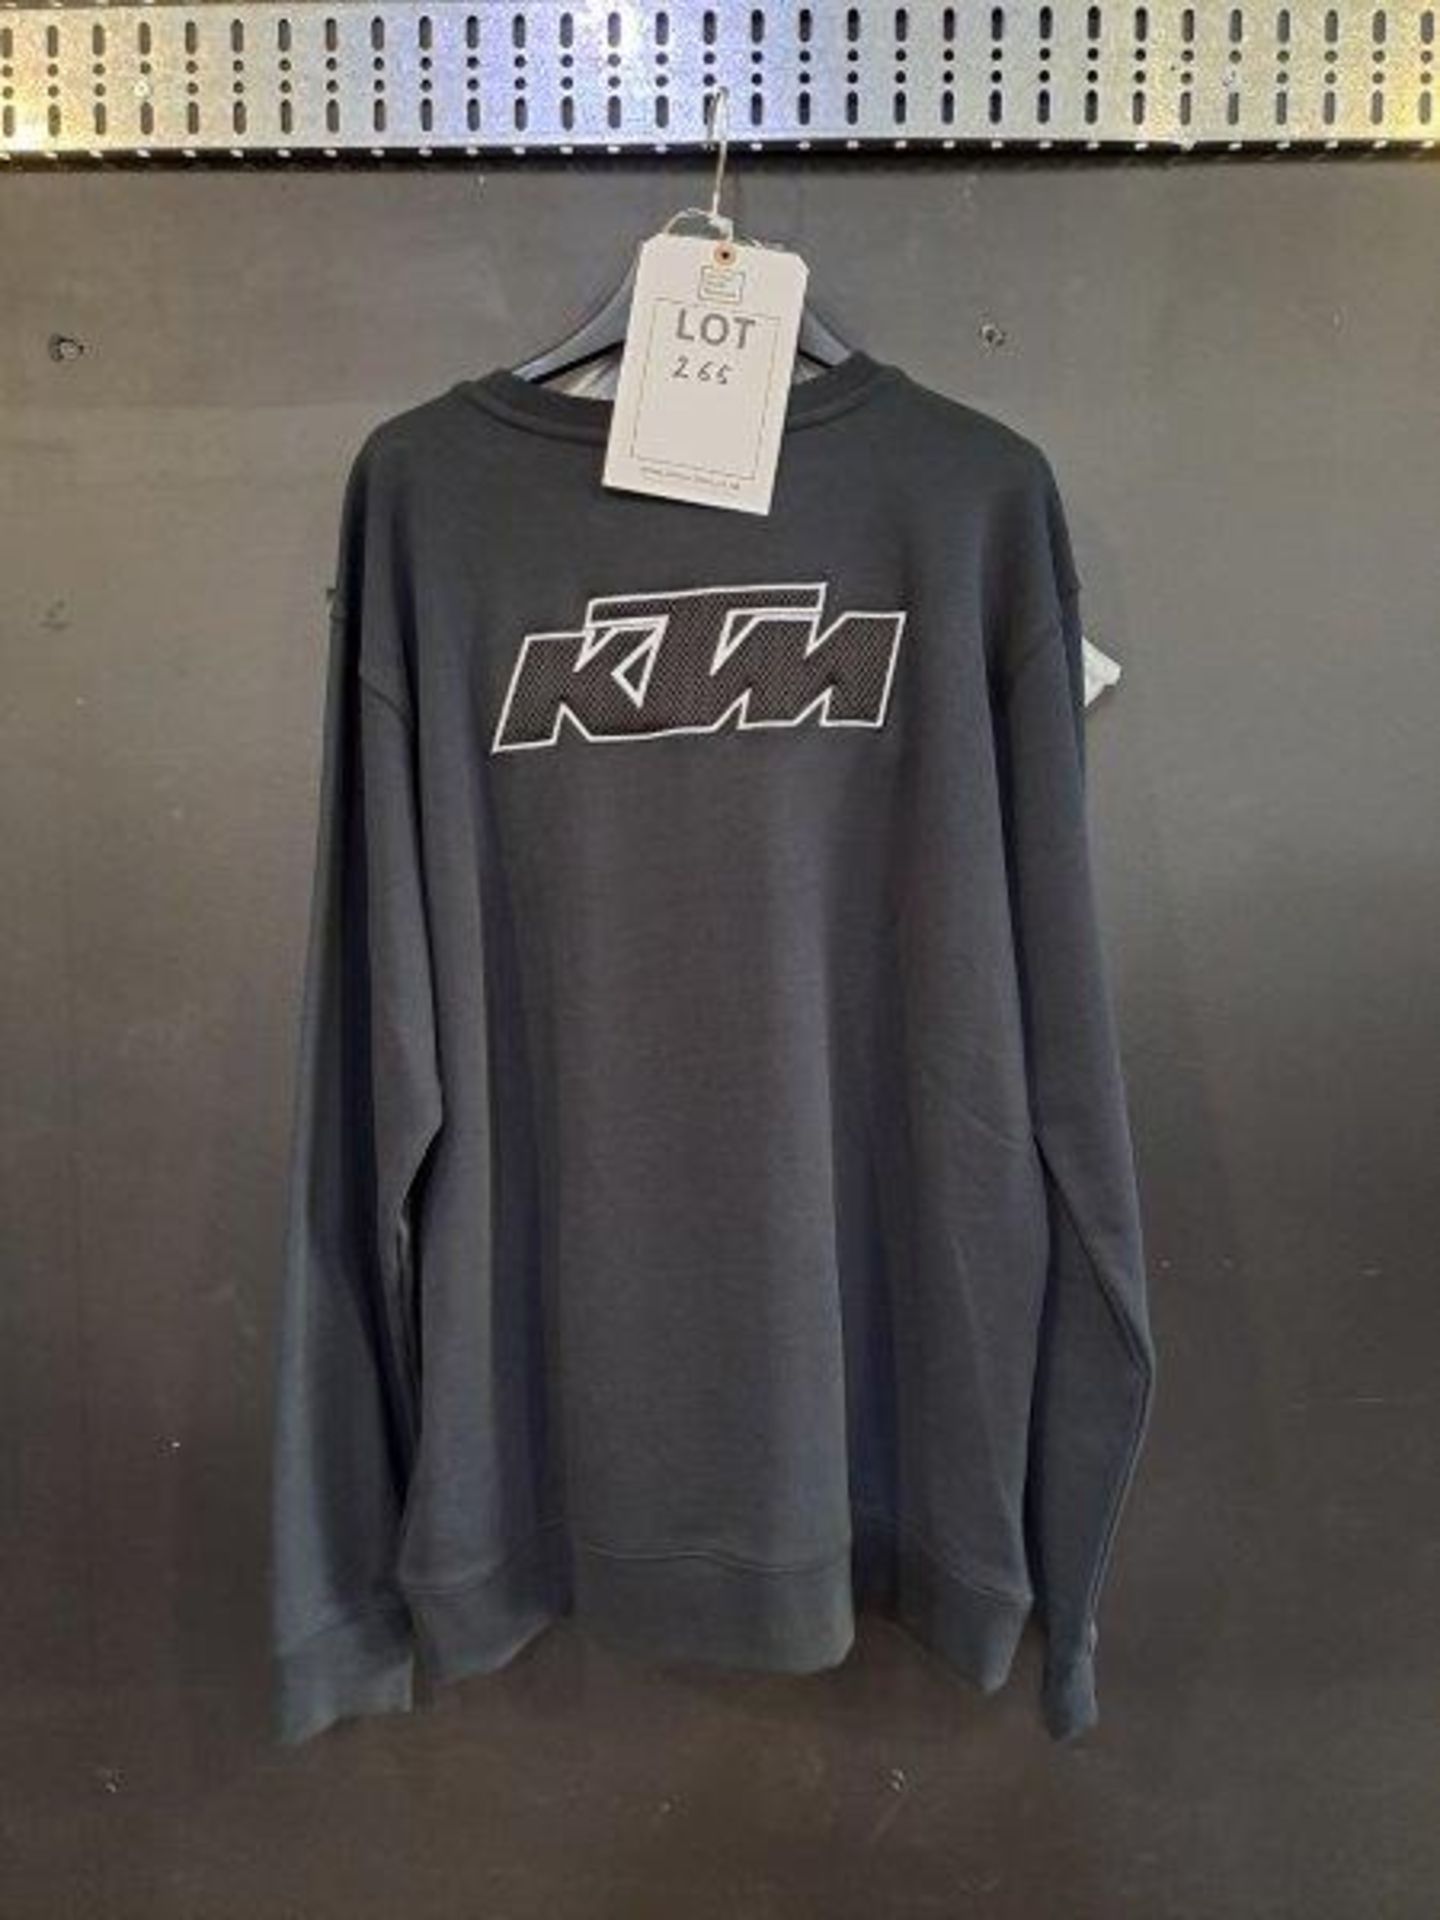 KTM Fashion Clothing - Image 4 of 8